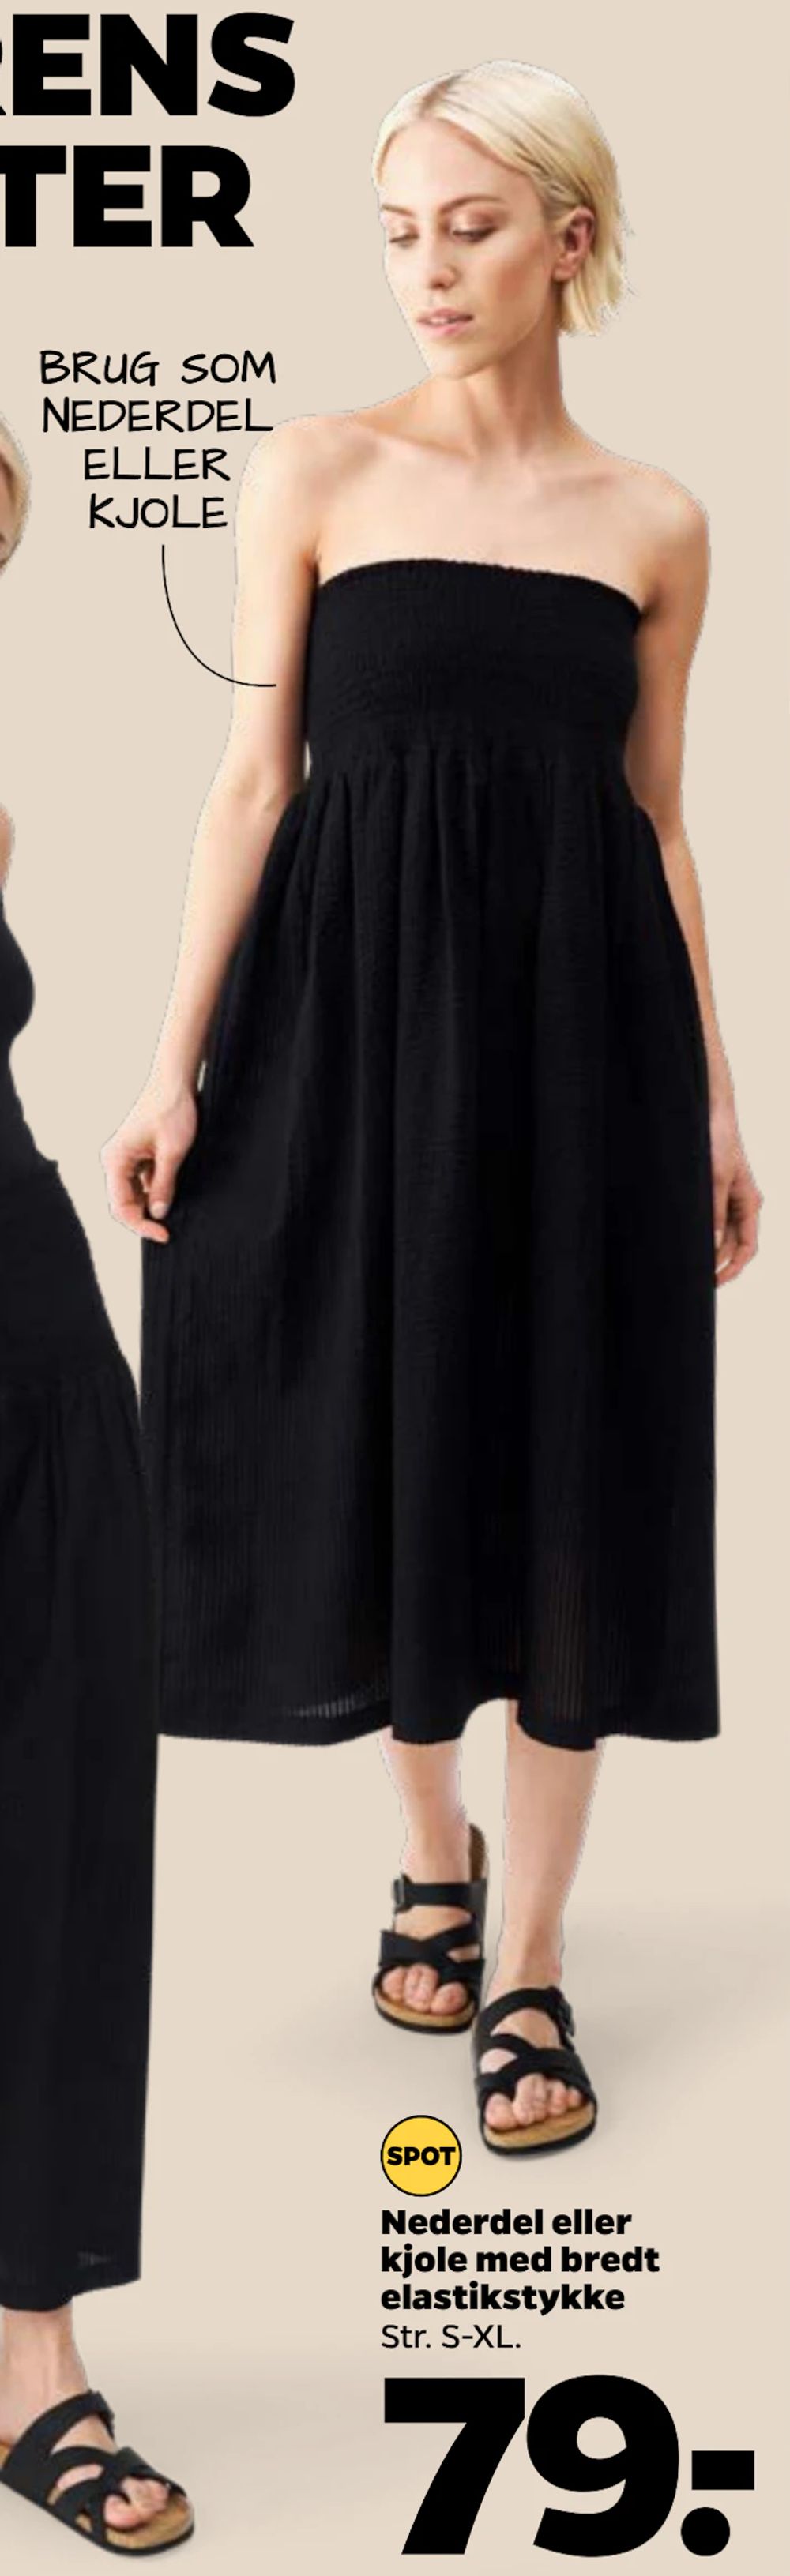 Tilbud på Nederdel eller kjole med bredt elastikstykke fra Netto til 79 kr.